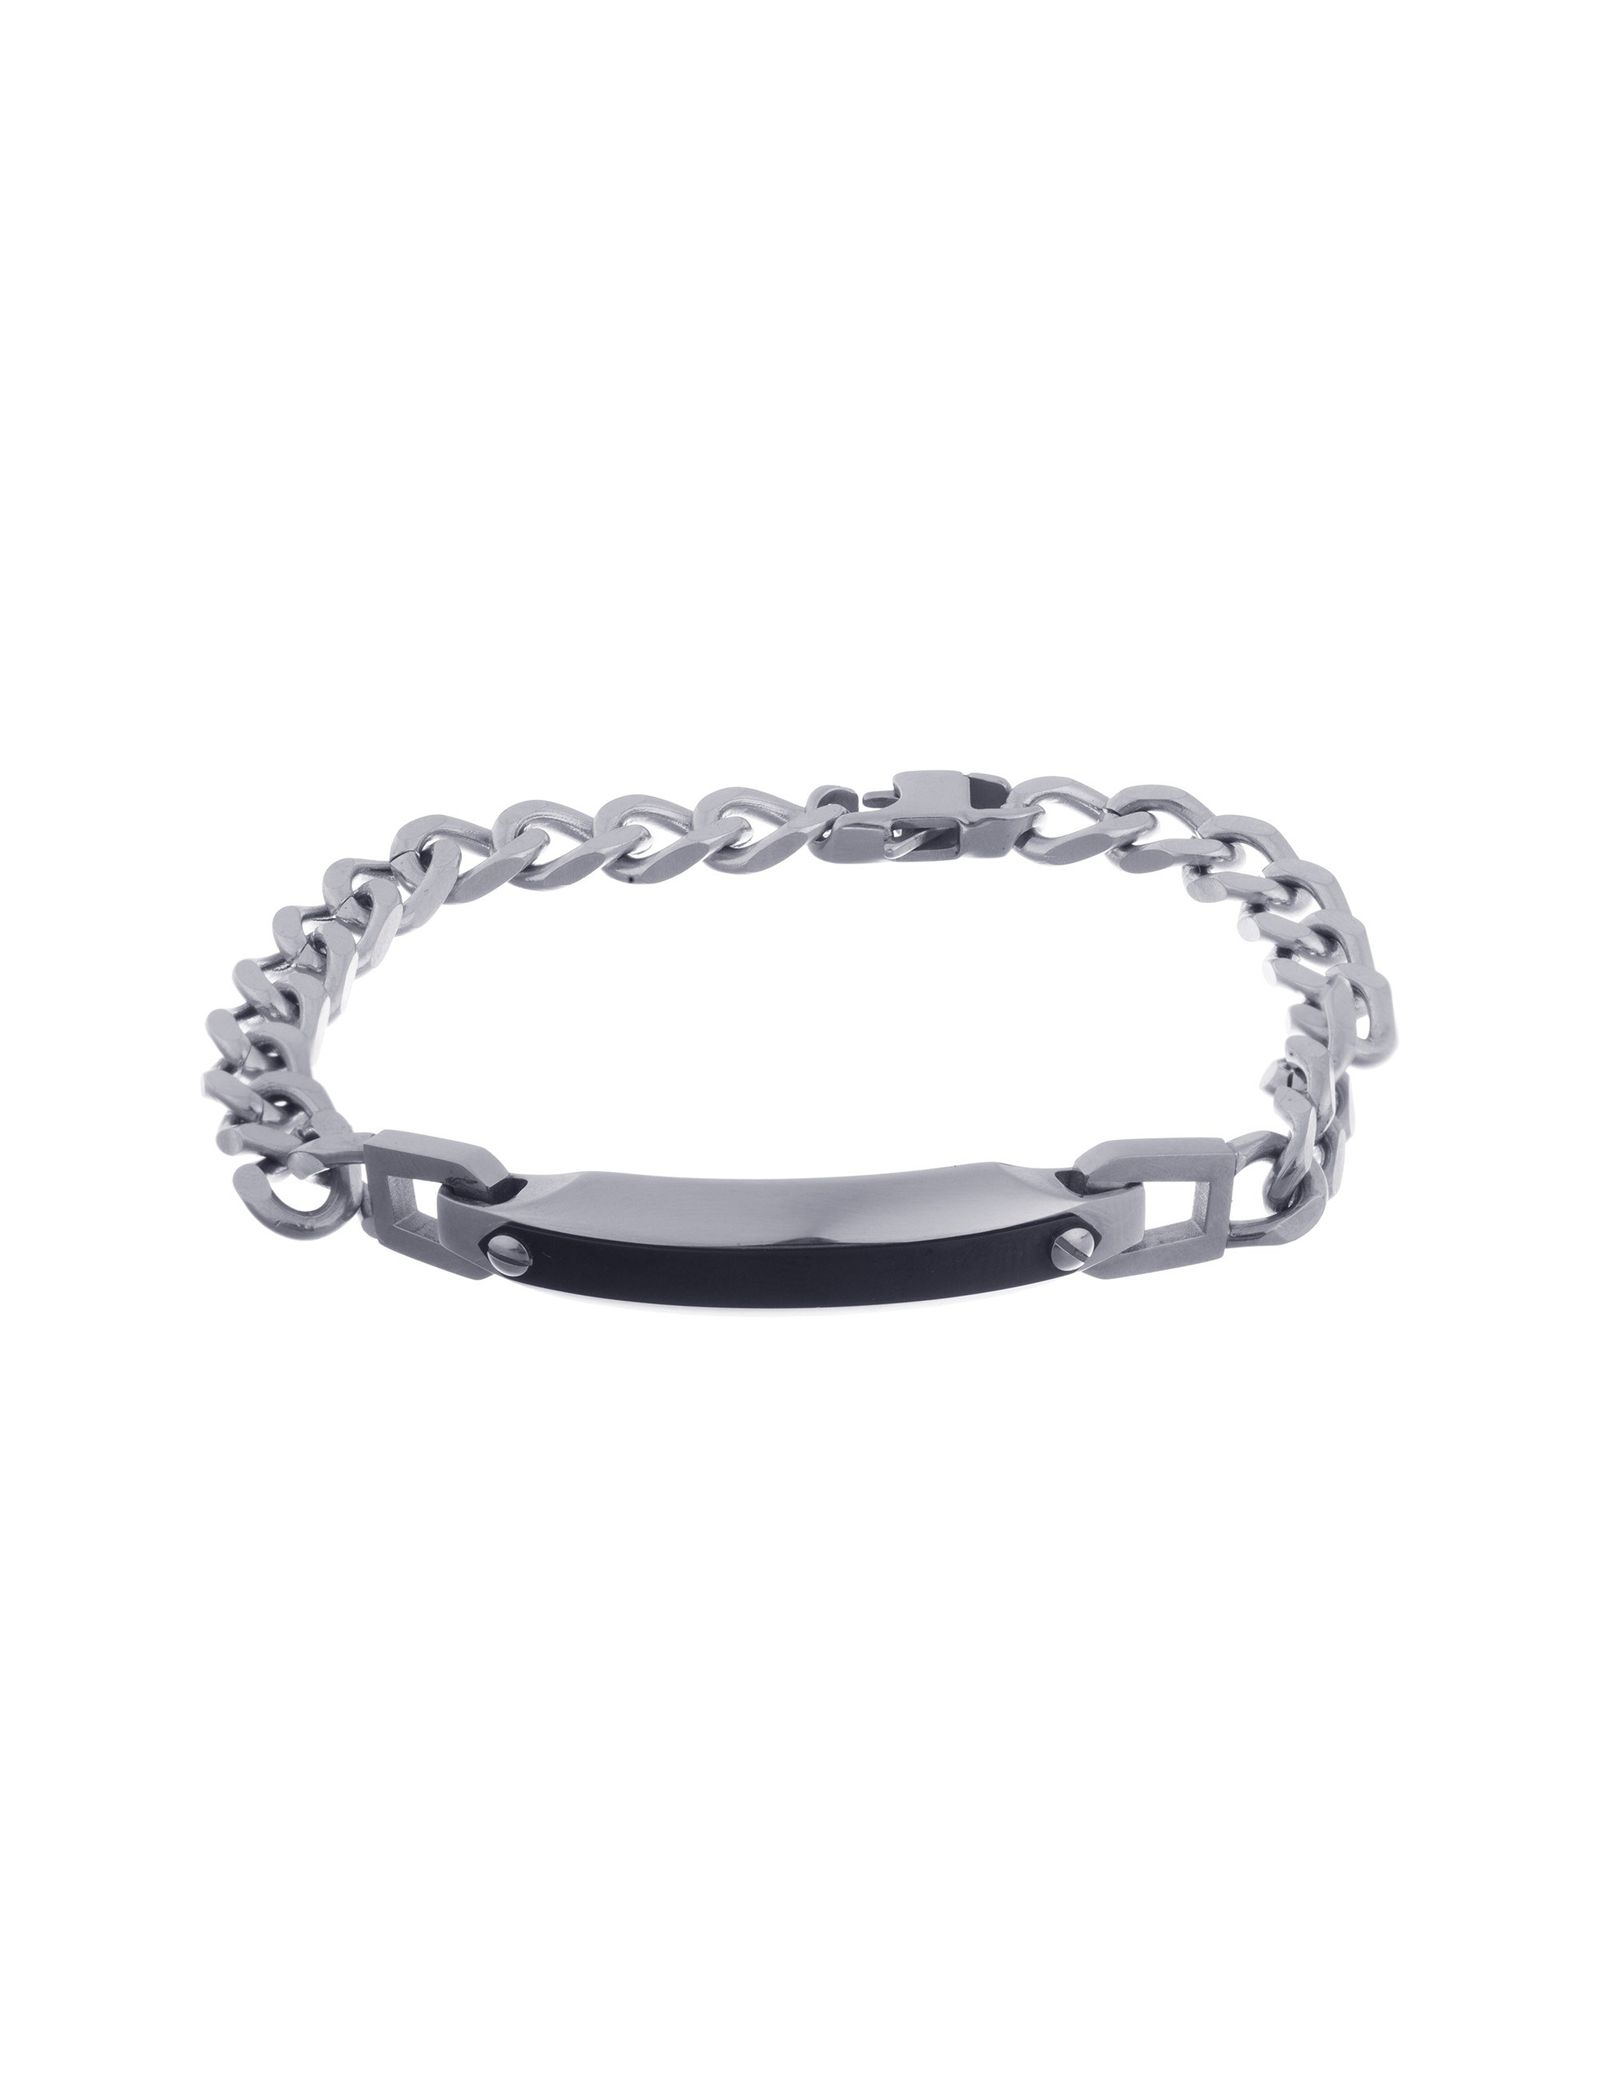 دستبند زنجیری مردانه - برازوی - Silver - 1